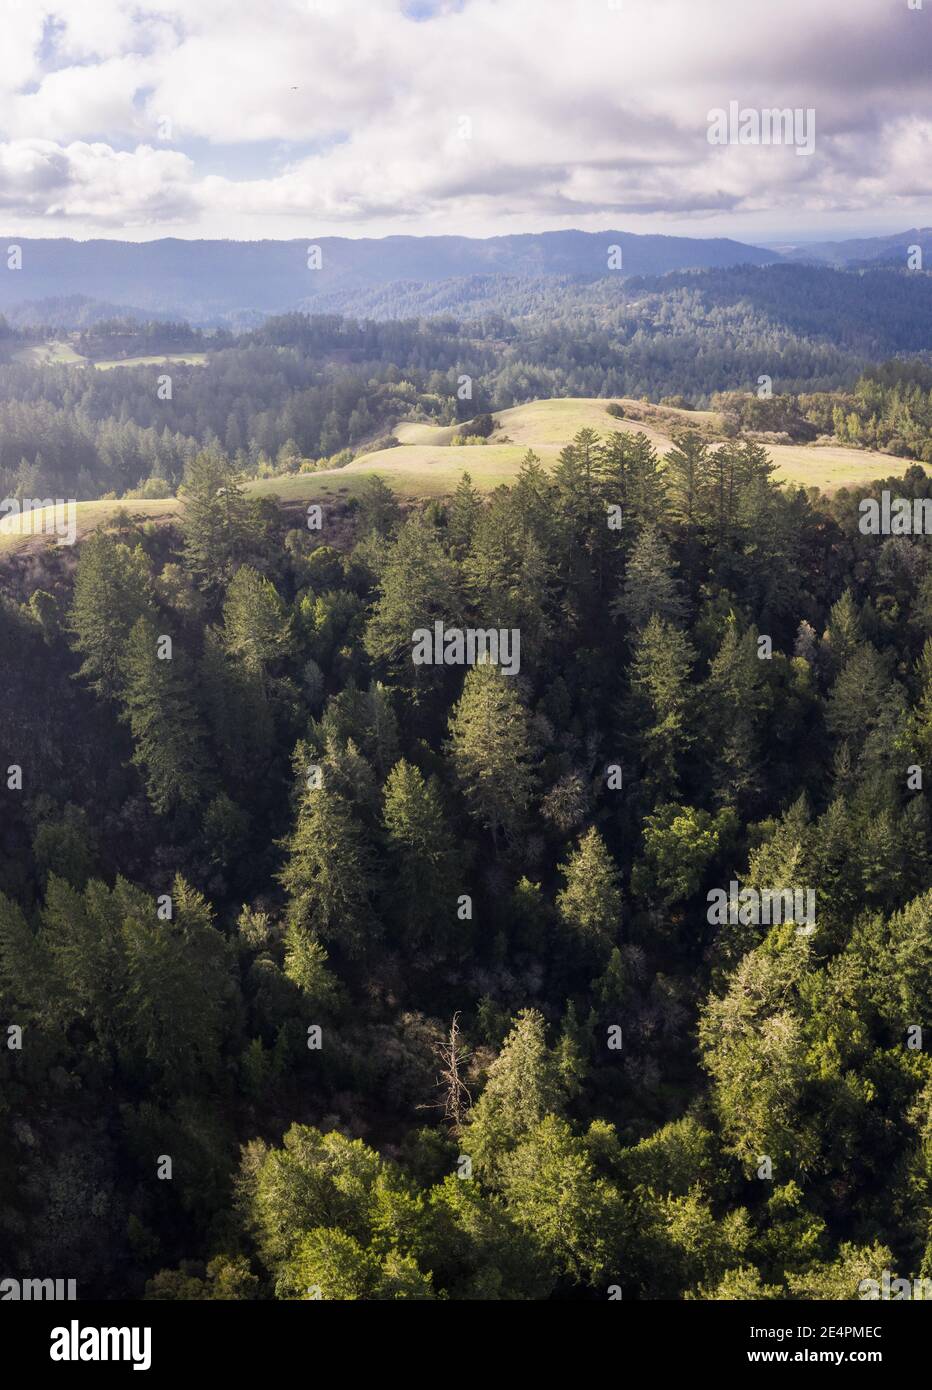 Ein gemischter immergrüner Wald bedeckt die Santa Cruz Berge südlich von San Francisco. Diese Küstenregion ist die Heimat von ausgedehnten malerischen Wäldern und Stränden. Stockfoto